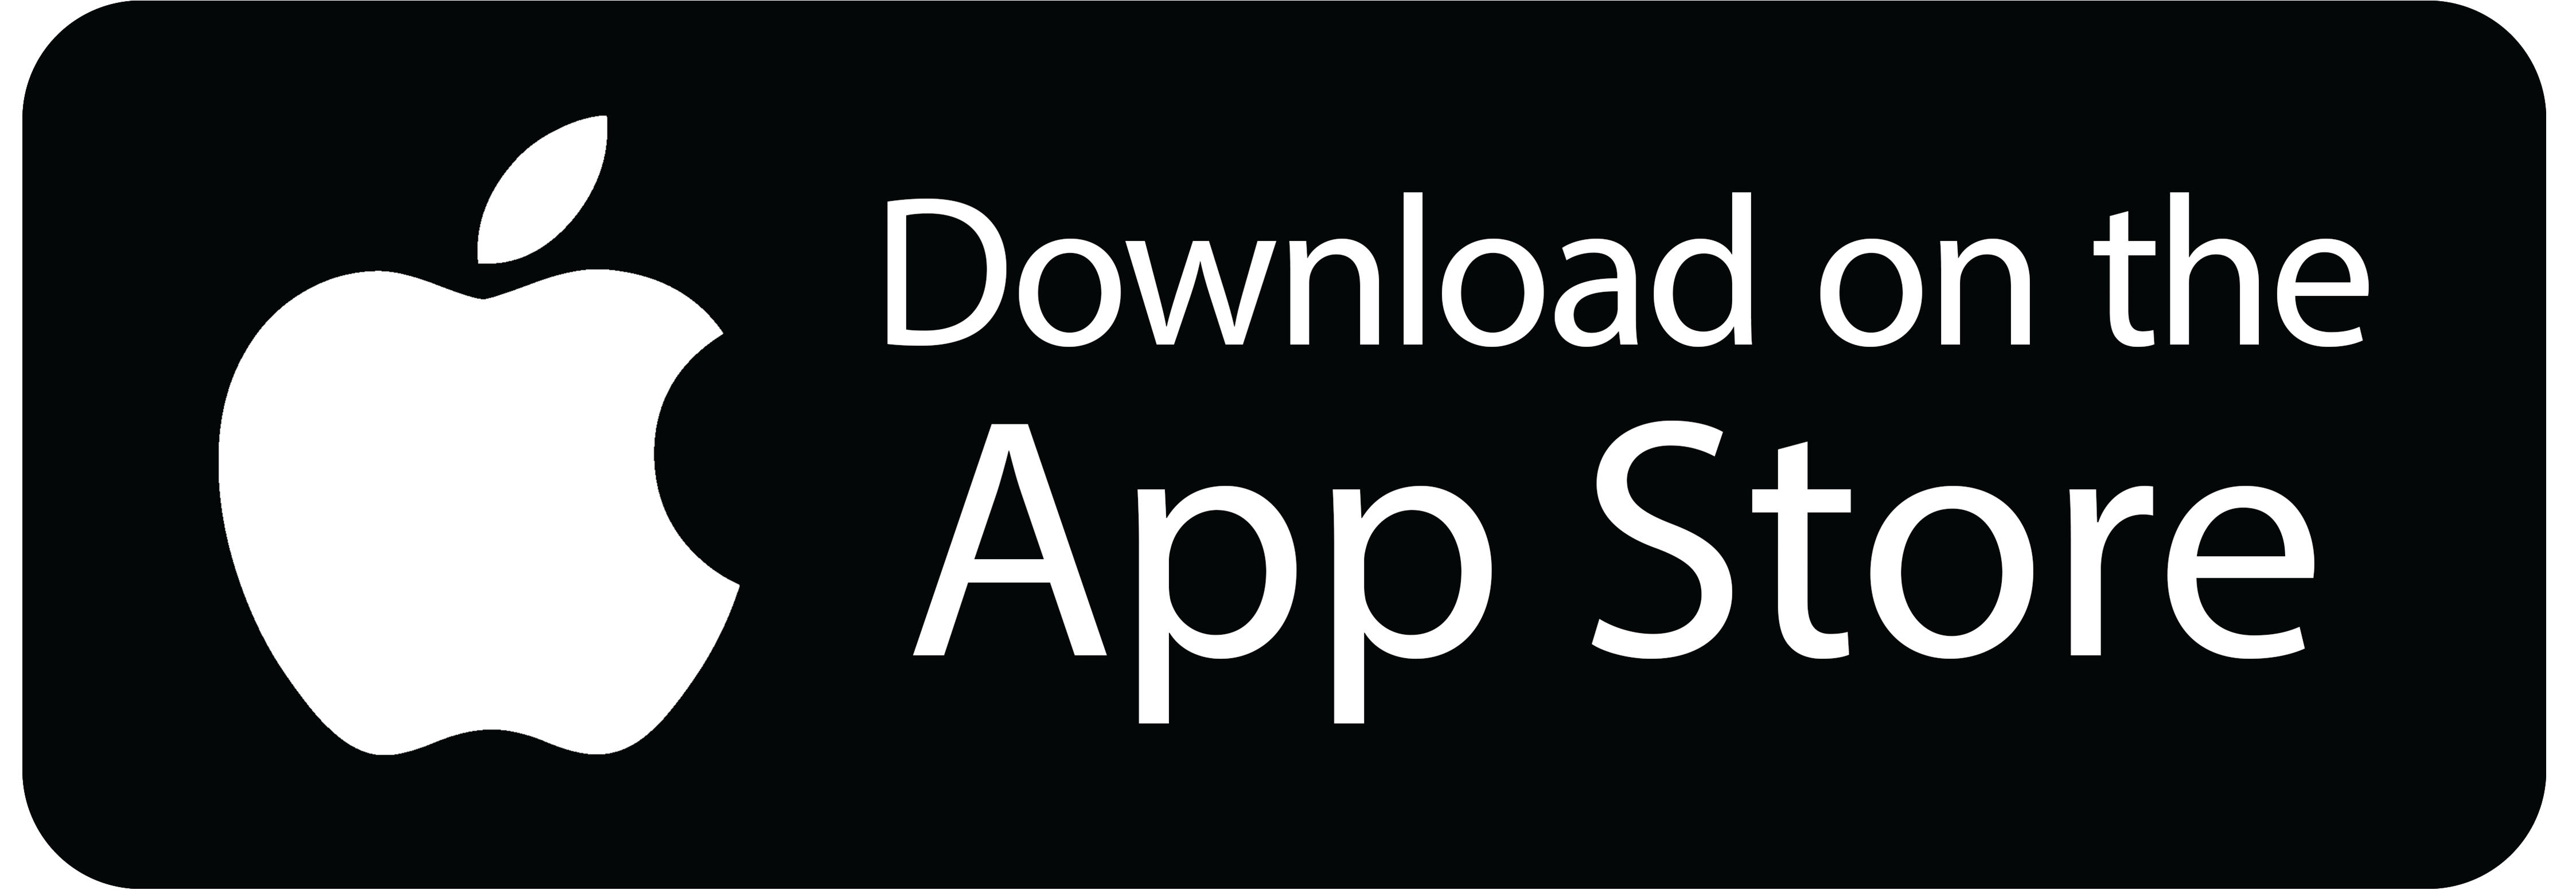 Legis Mobile App Store